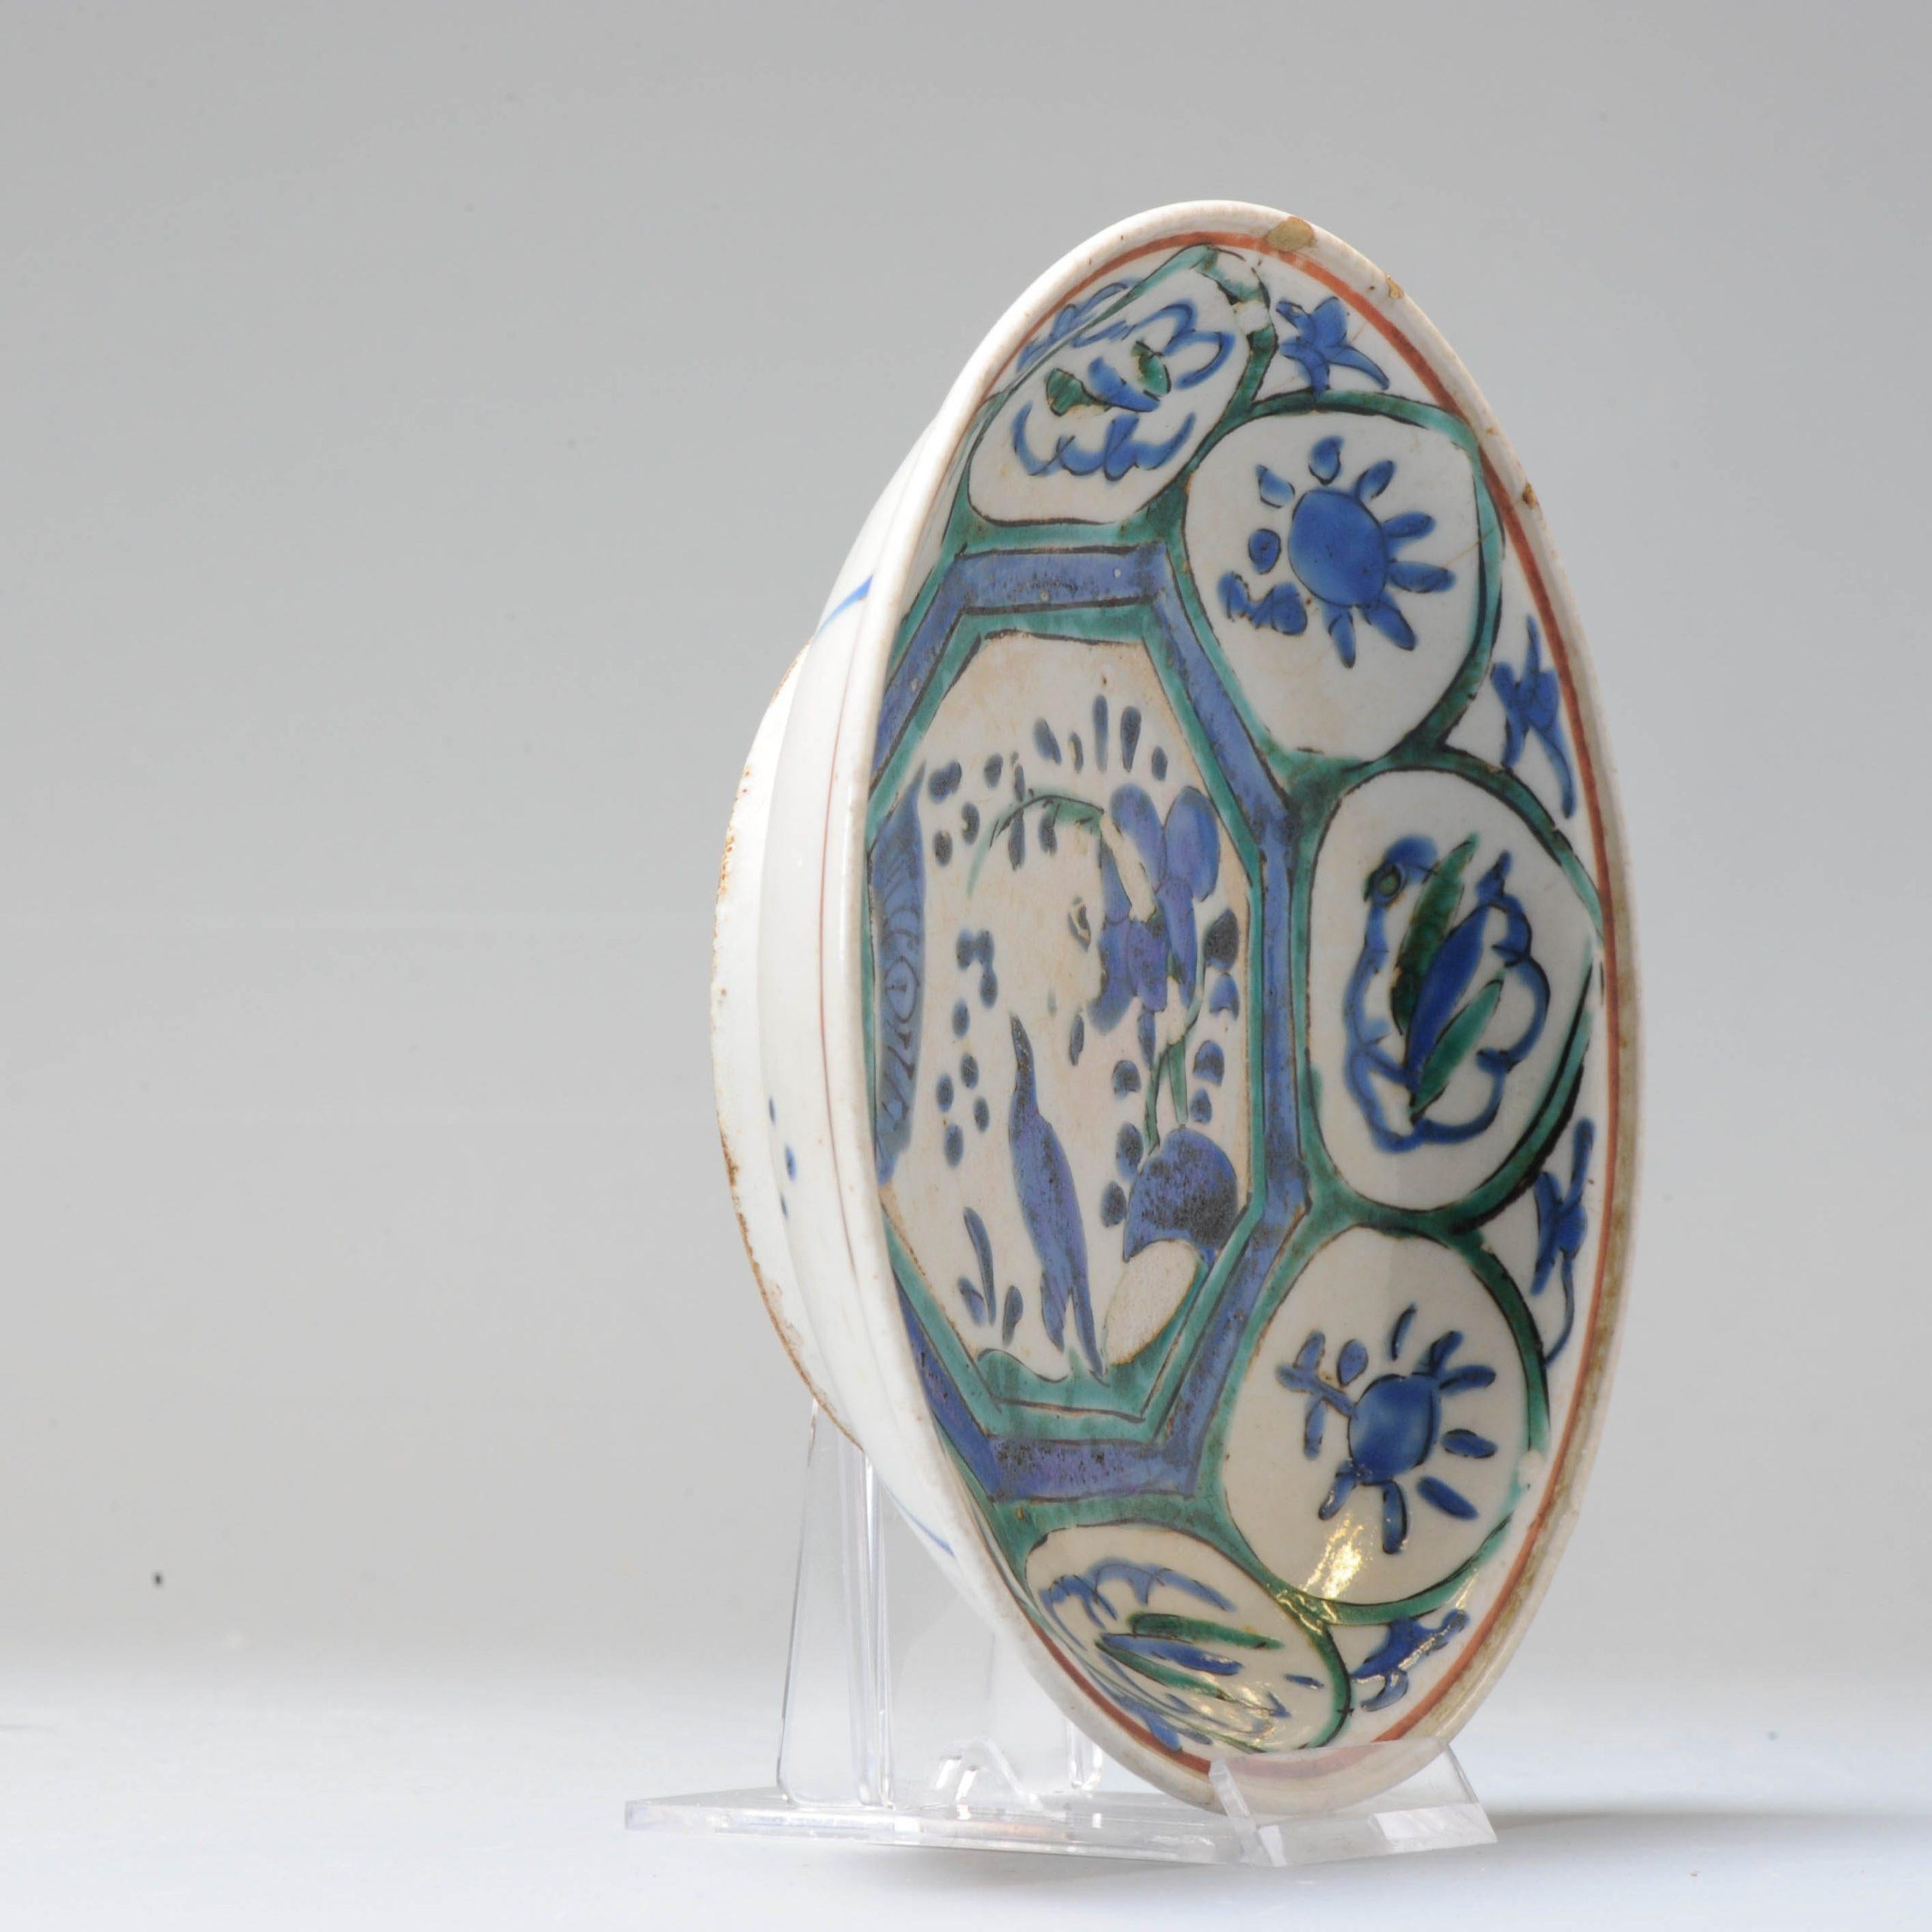 Joli petit plat de la seconde moitié du XVIIe siècle.

Il est peint en émaux surglacés dans le style d'un plat chinois Kraak. On peut y voir une scène typique de Kraak avec un oiseau sur un rocher et des fleurs et des objets dans la bordure/le